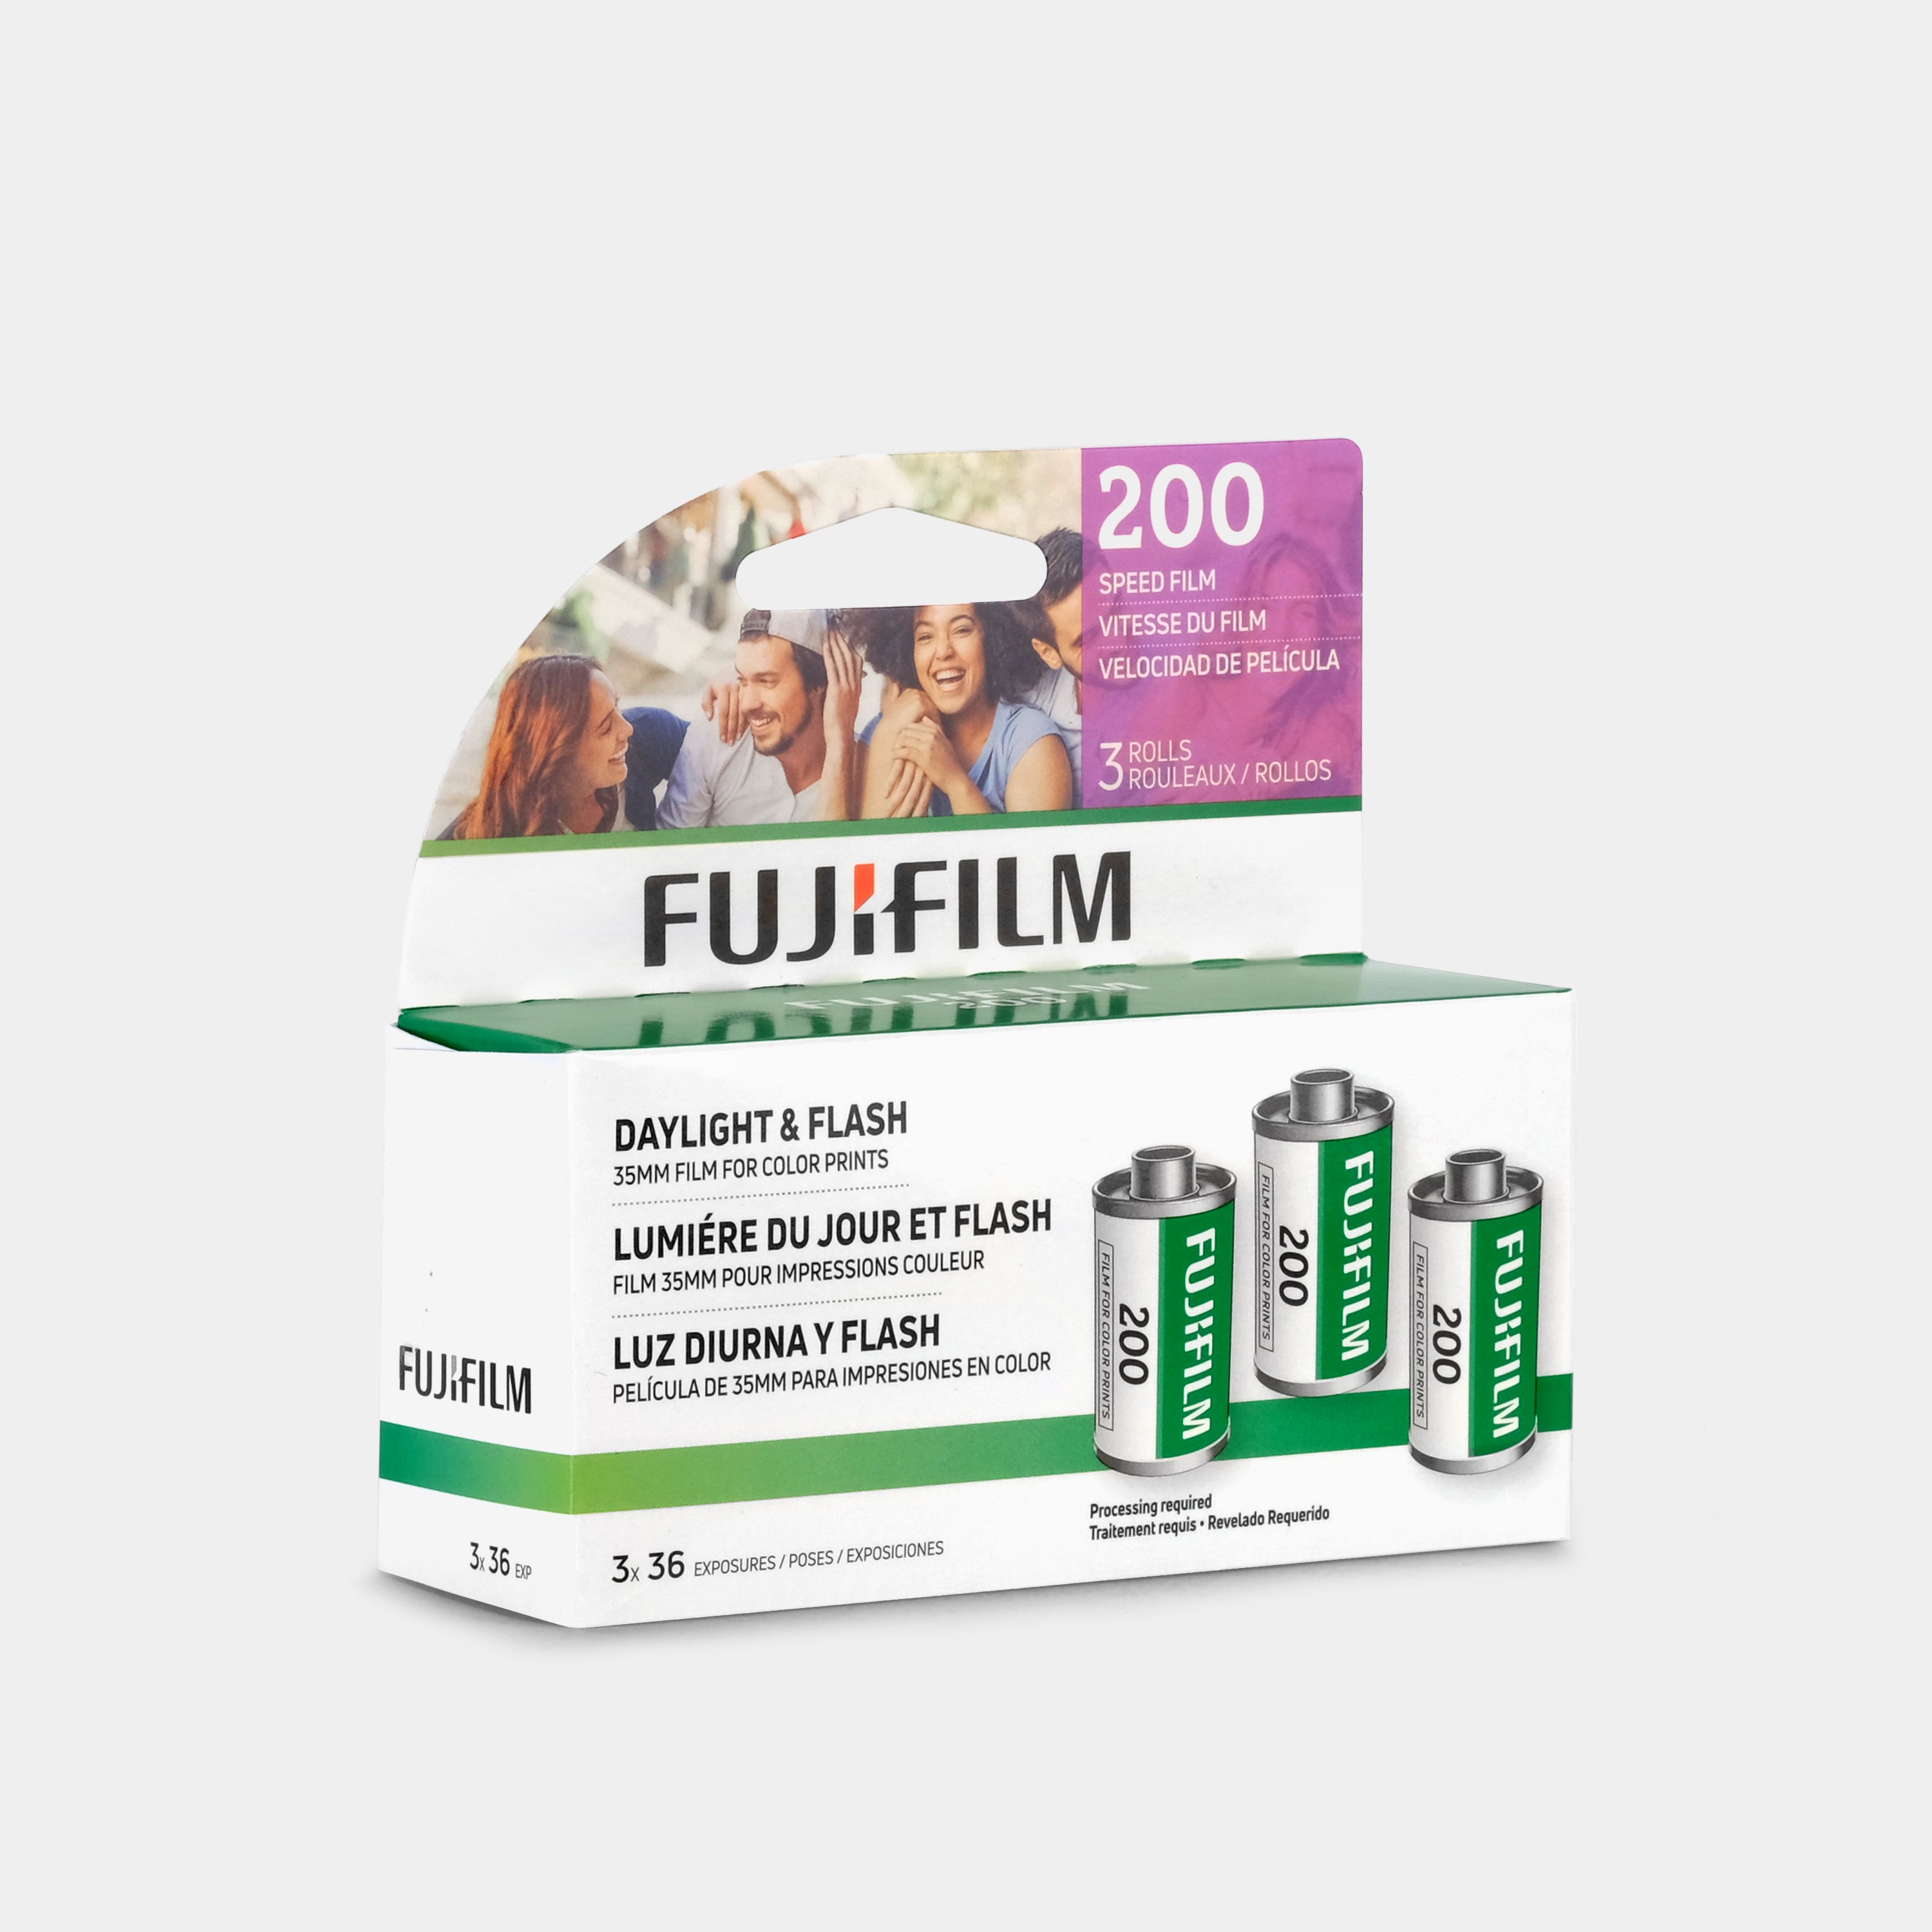 Fujifilm Superia X-tra 400 Color 35mm Film (36 Exposures)